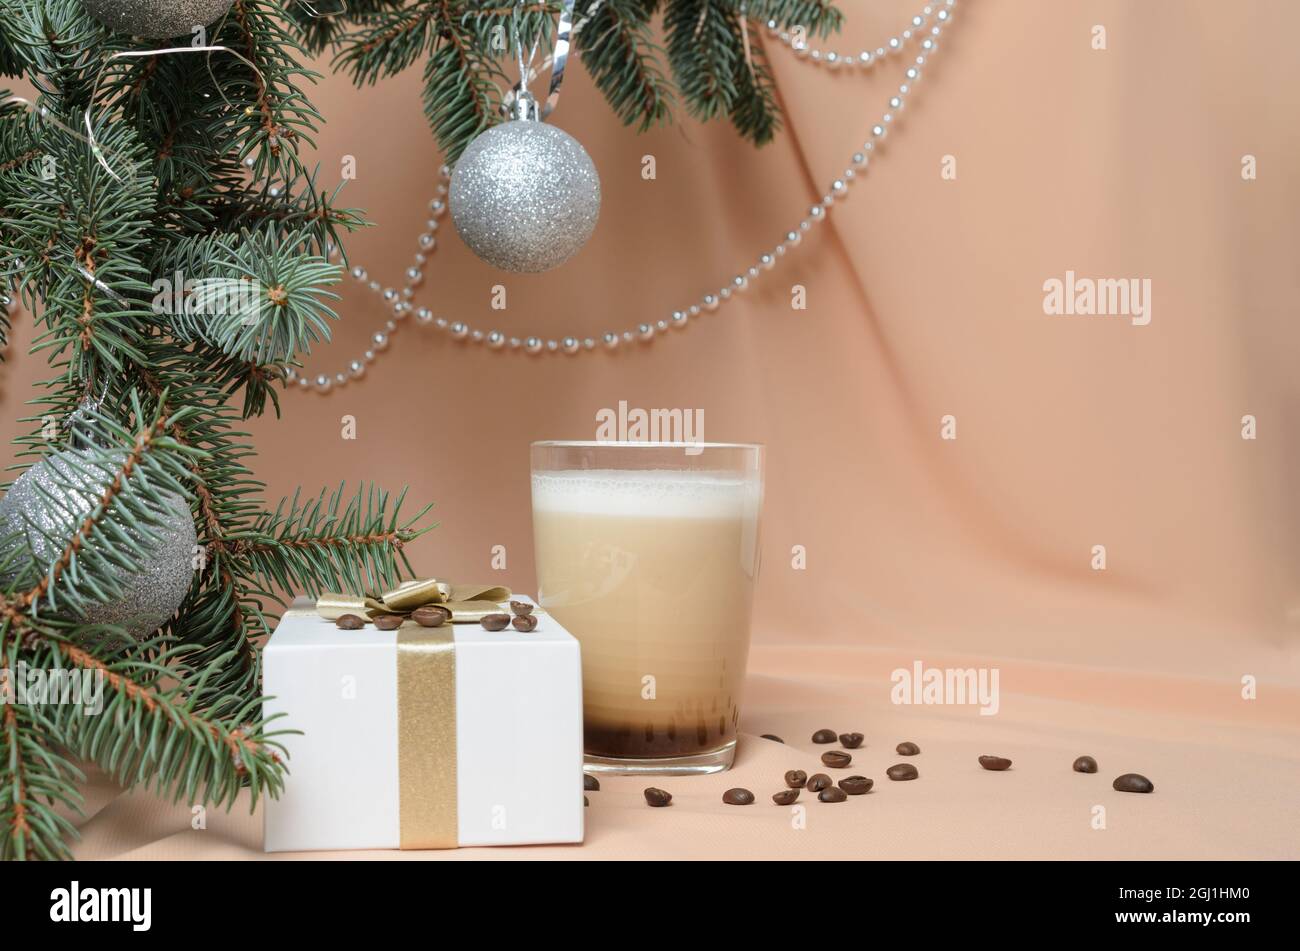 Eine Neujahrskomposition aus Zweigen eines Weihnachtsbaums, einem Glaskrug mit Kaffee und Milch auf dem Hintergrund fleischfarbener Wellen. Selektive Stockfoto